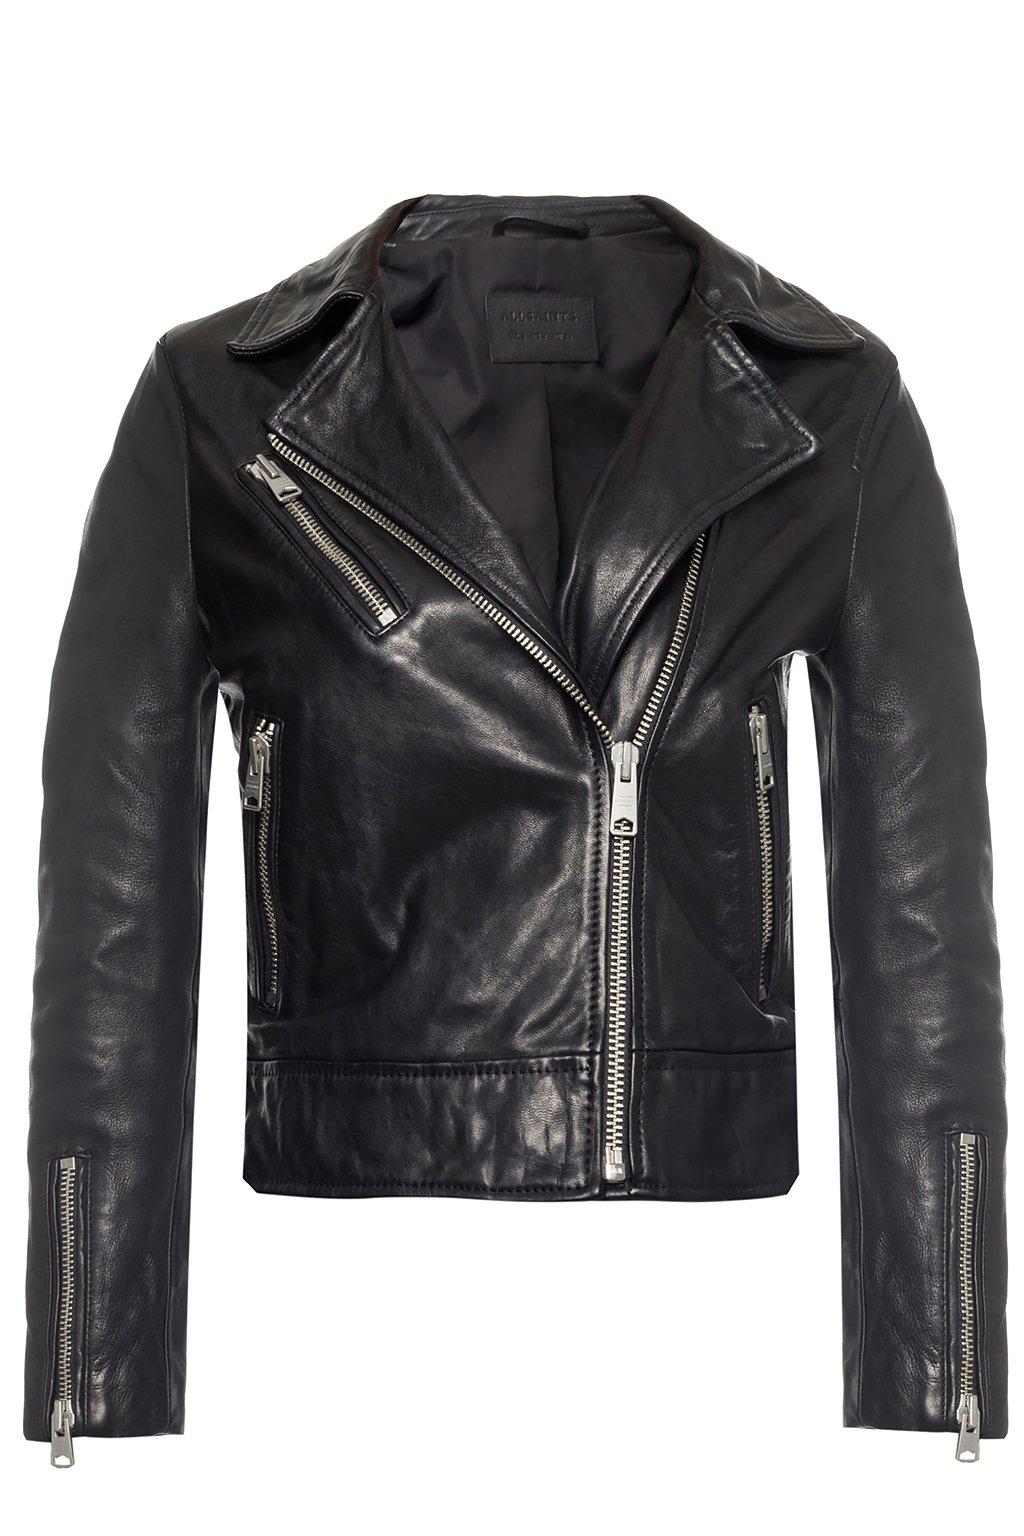 AllSaints 'fia' Leather Jacket in Black - Lyst